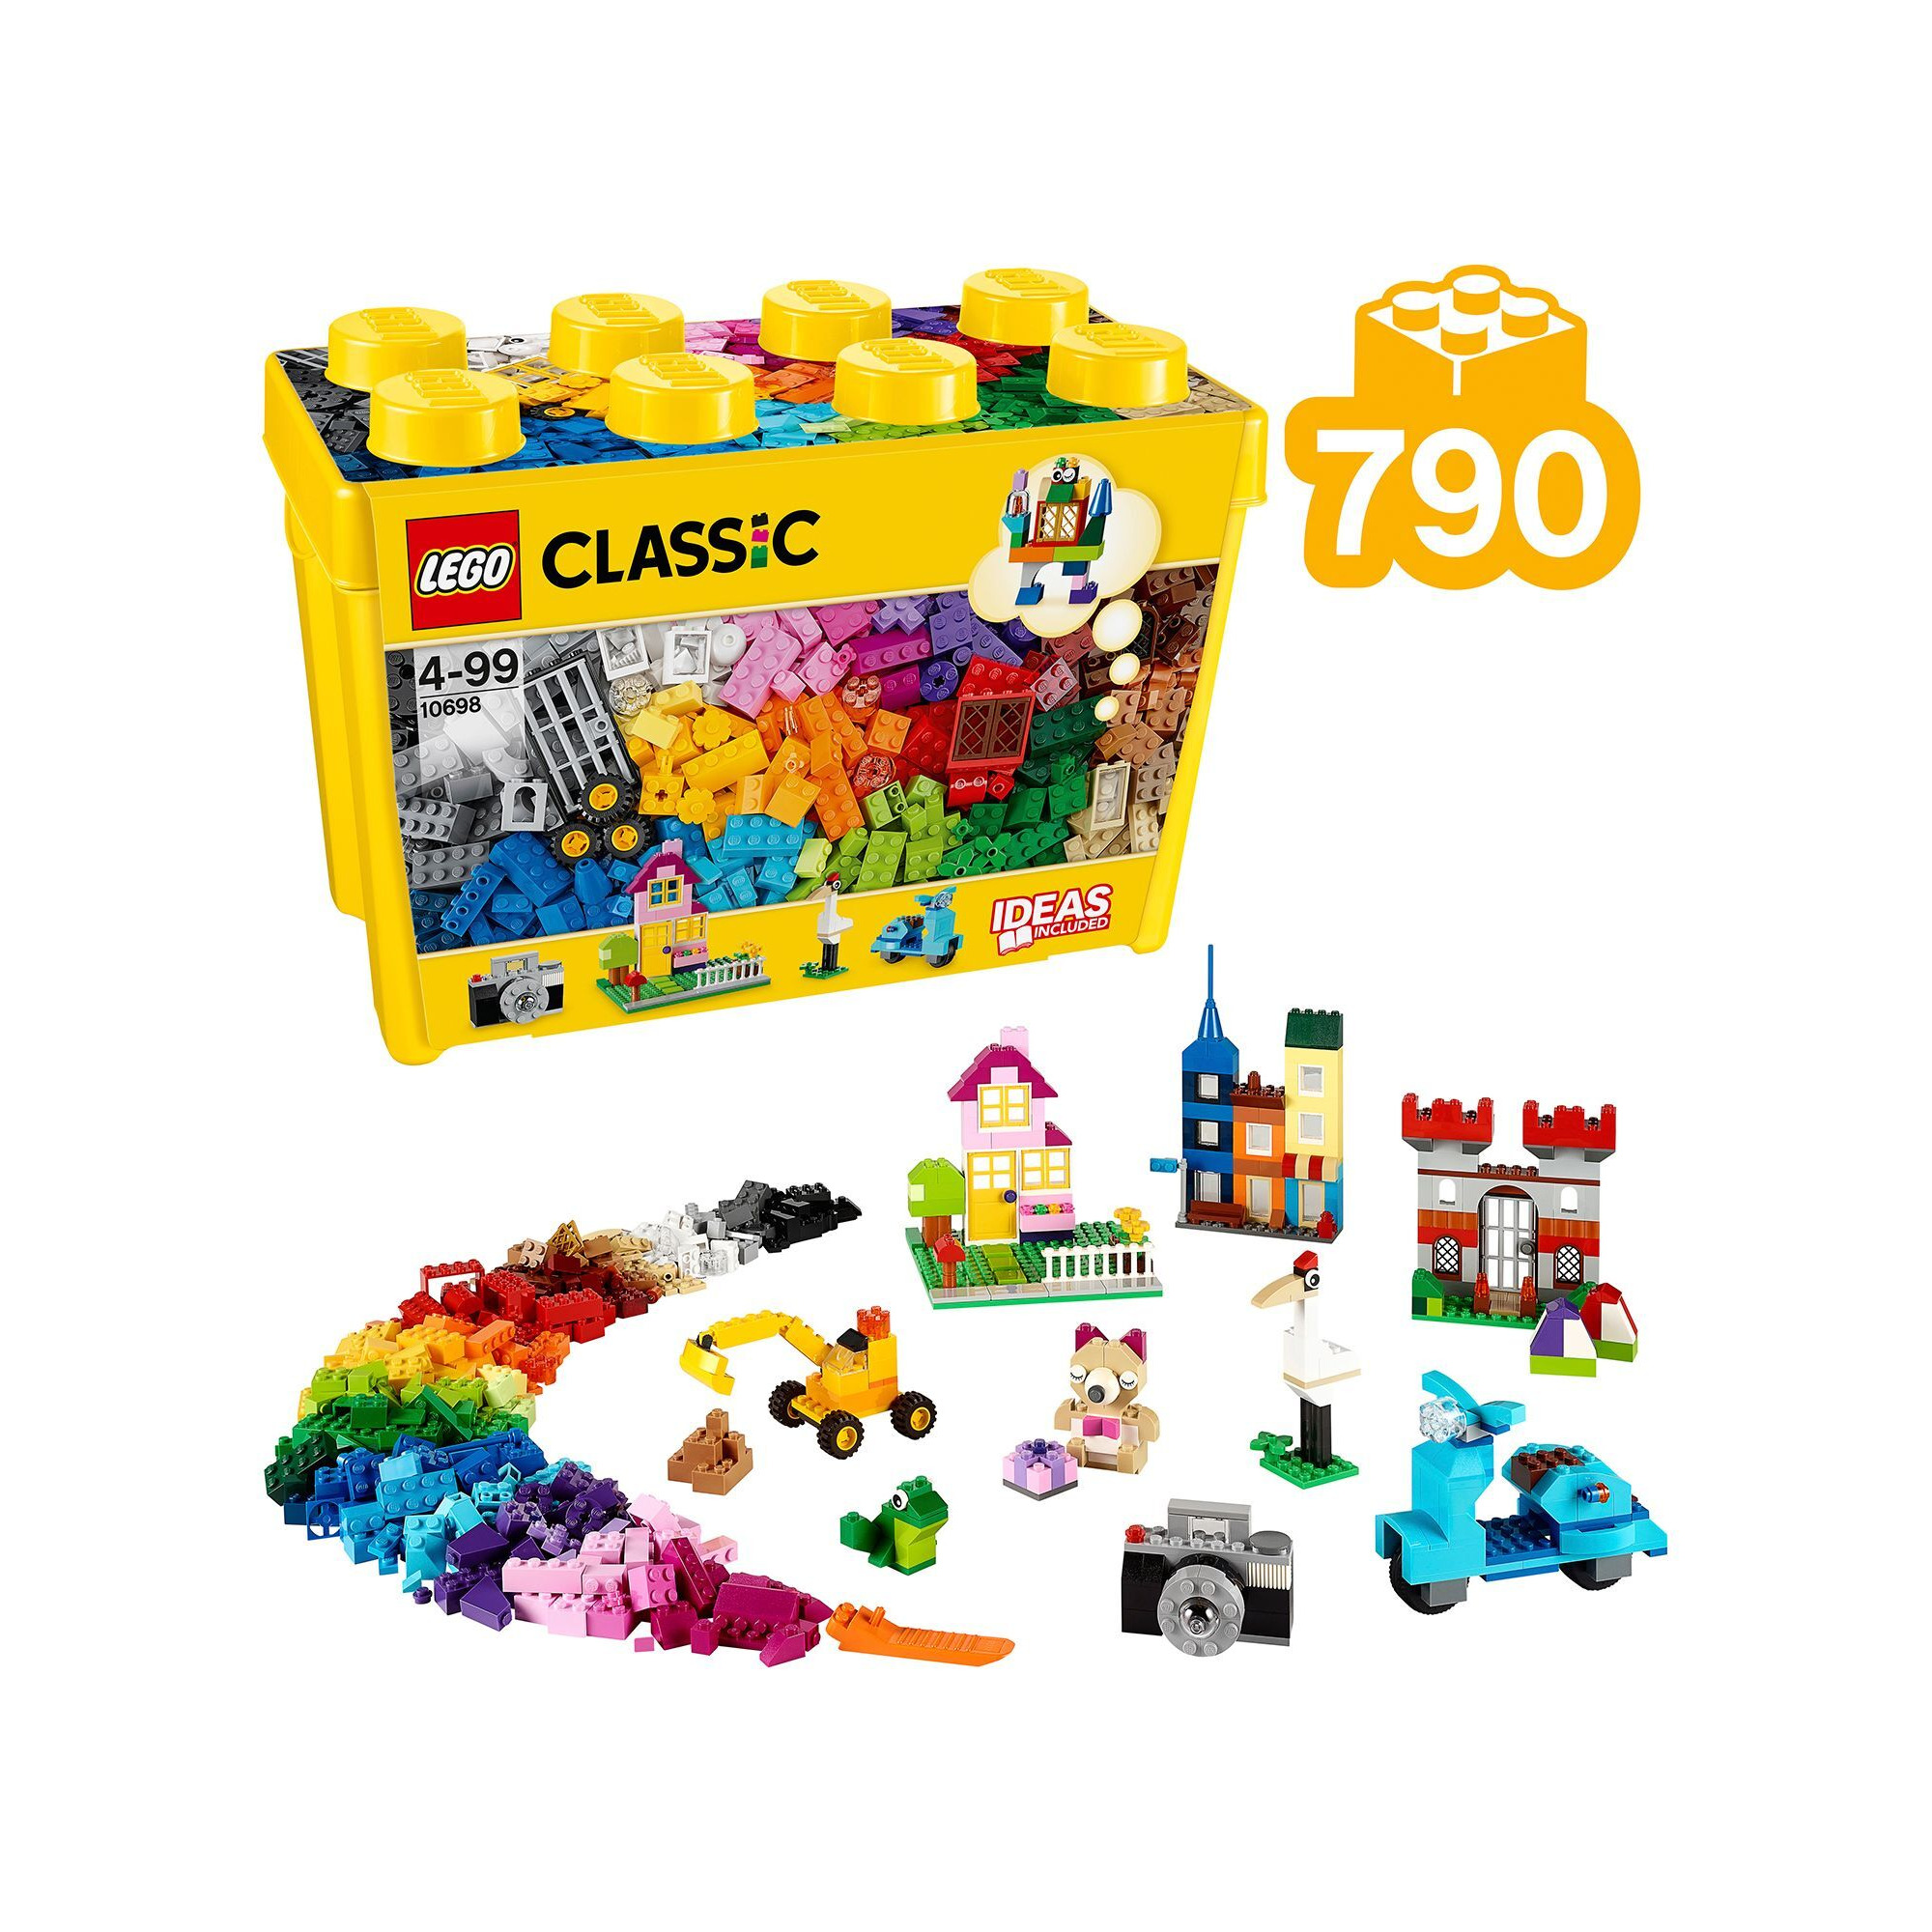 LEGO Classic 10698 Large Creative Brick Box - image 1